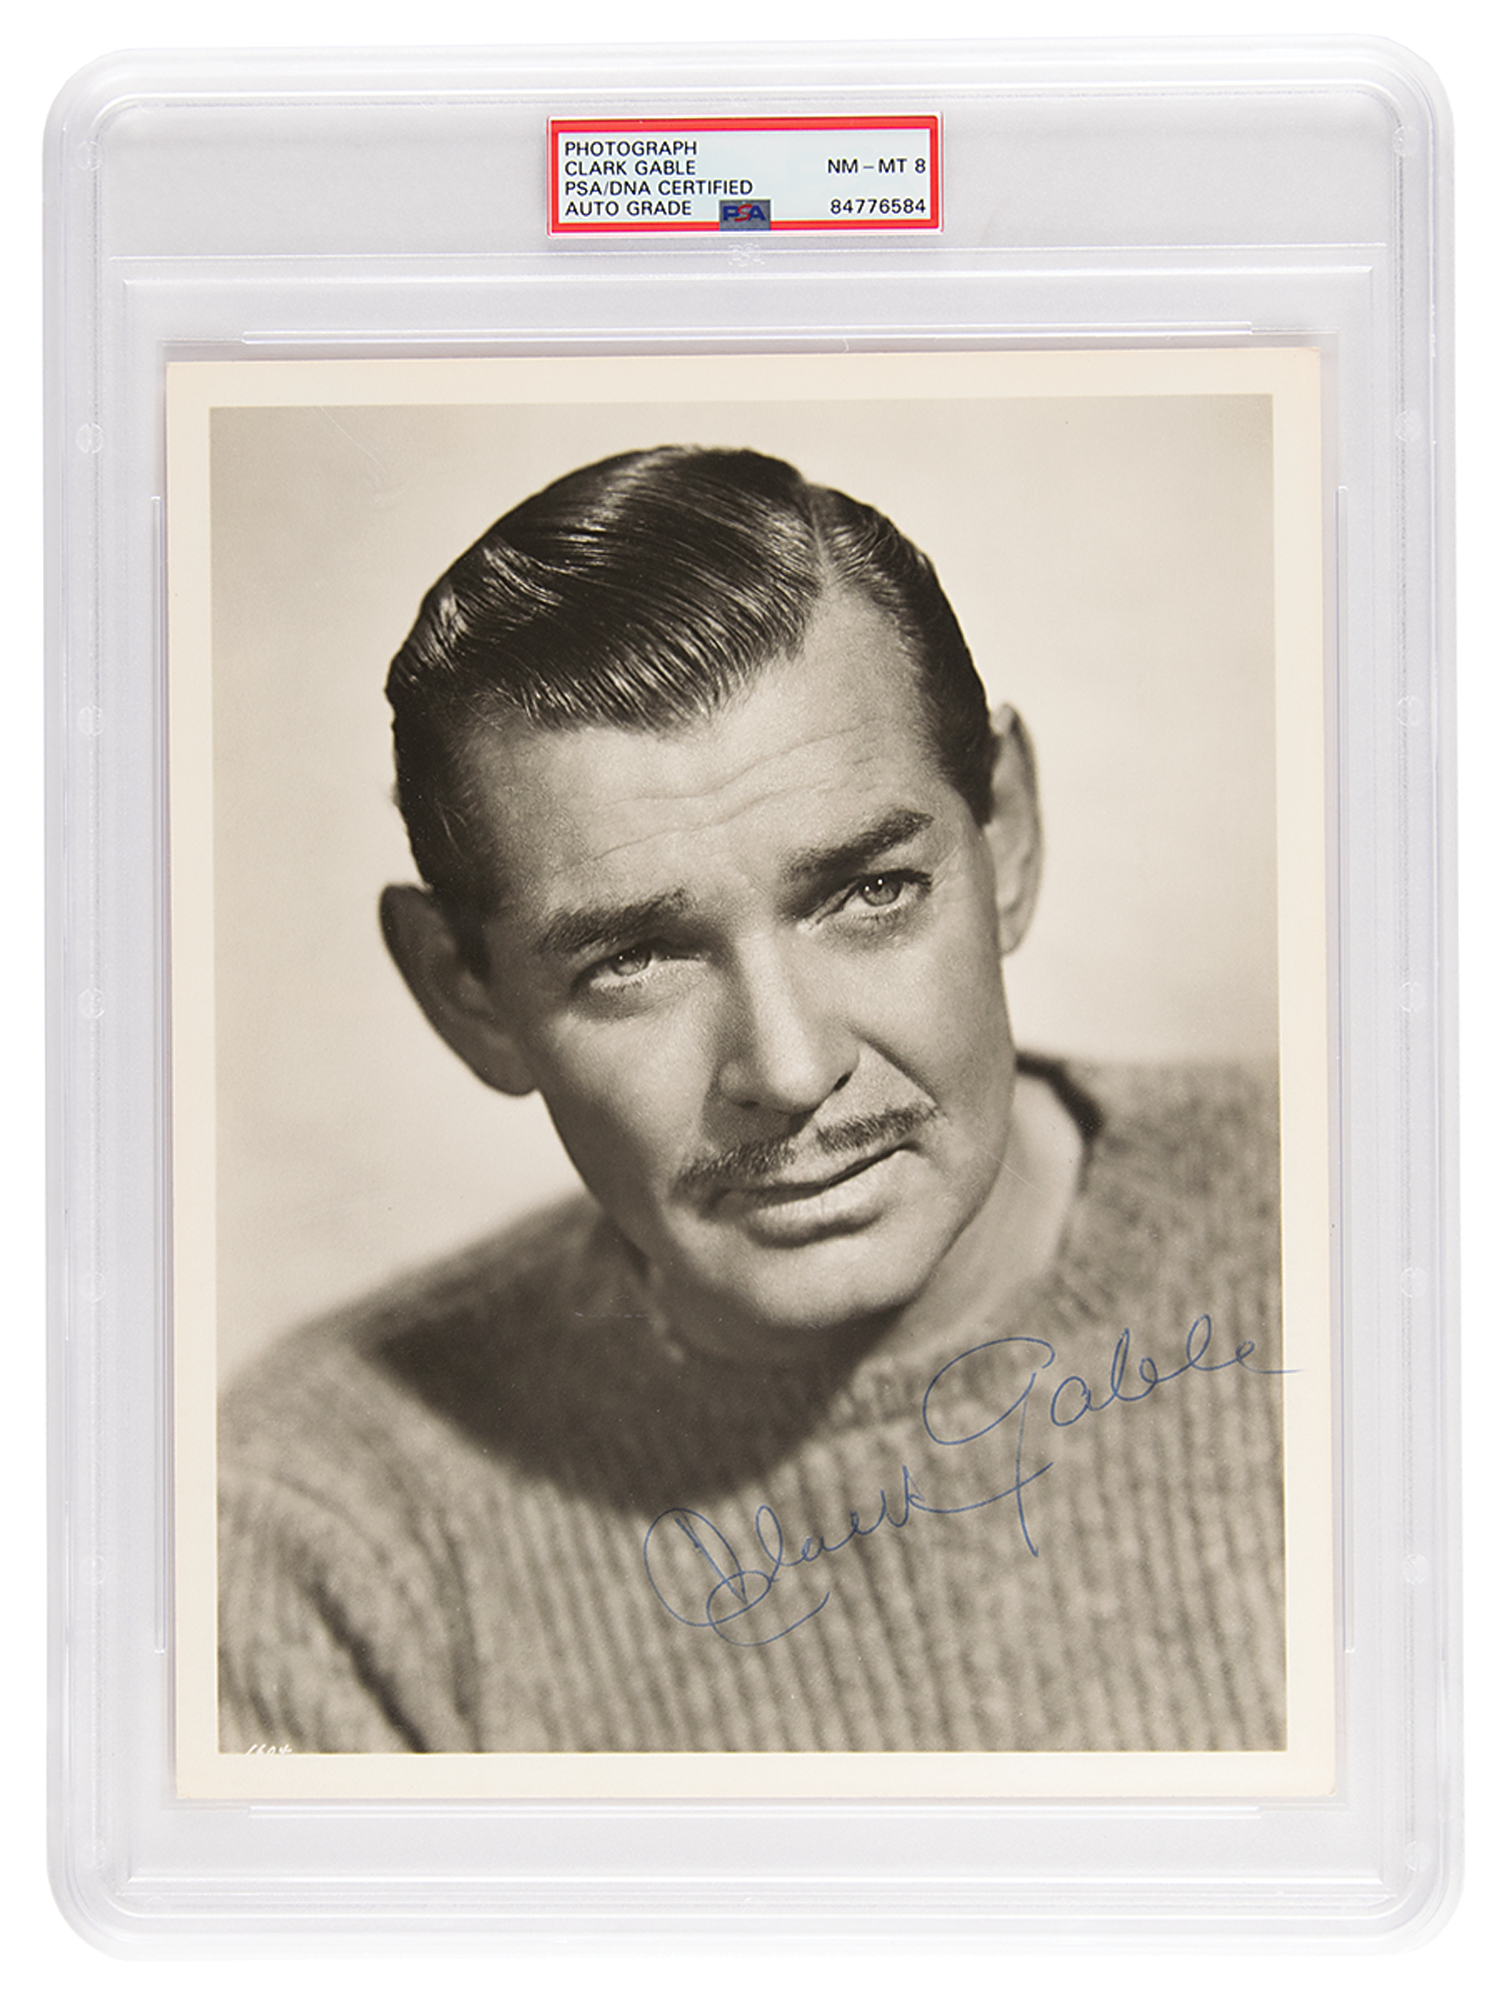 Lot #7380 Clark Gable Signed Photograph - PSA NM-MT 8